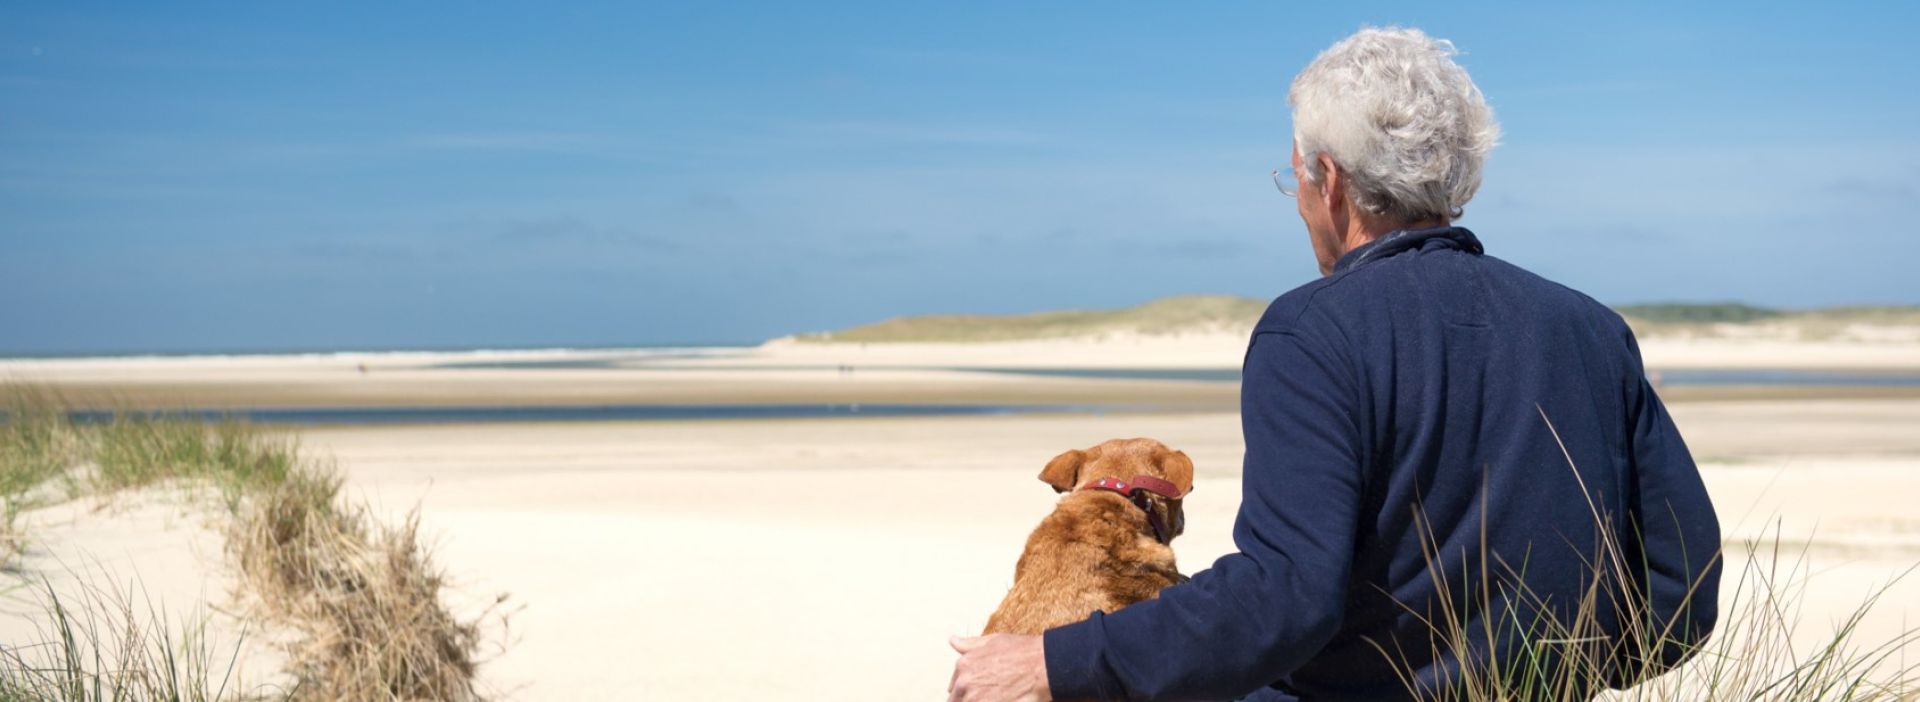 Mann und Hund sitzen am Strand und schauen aufs Meer